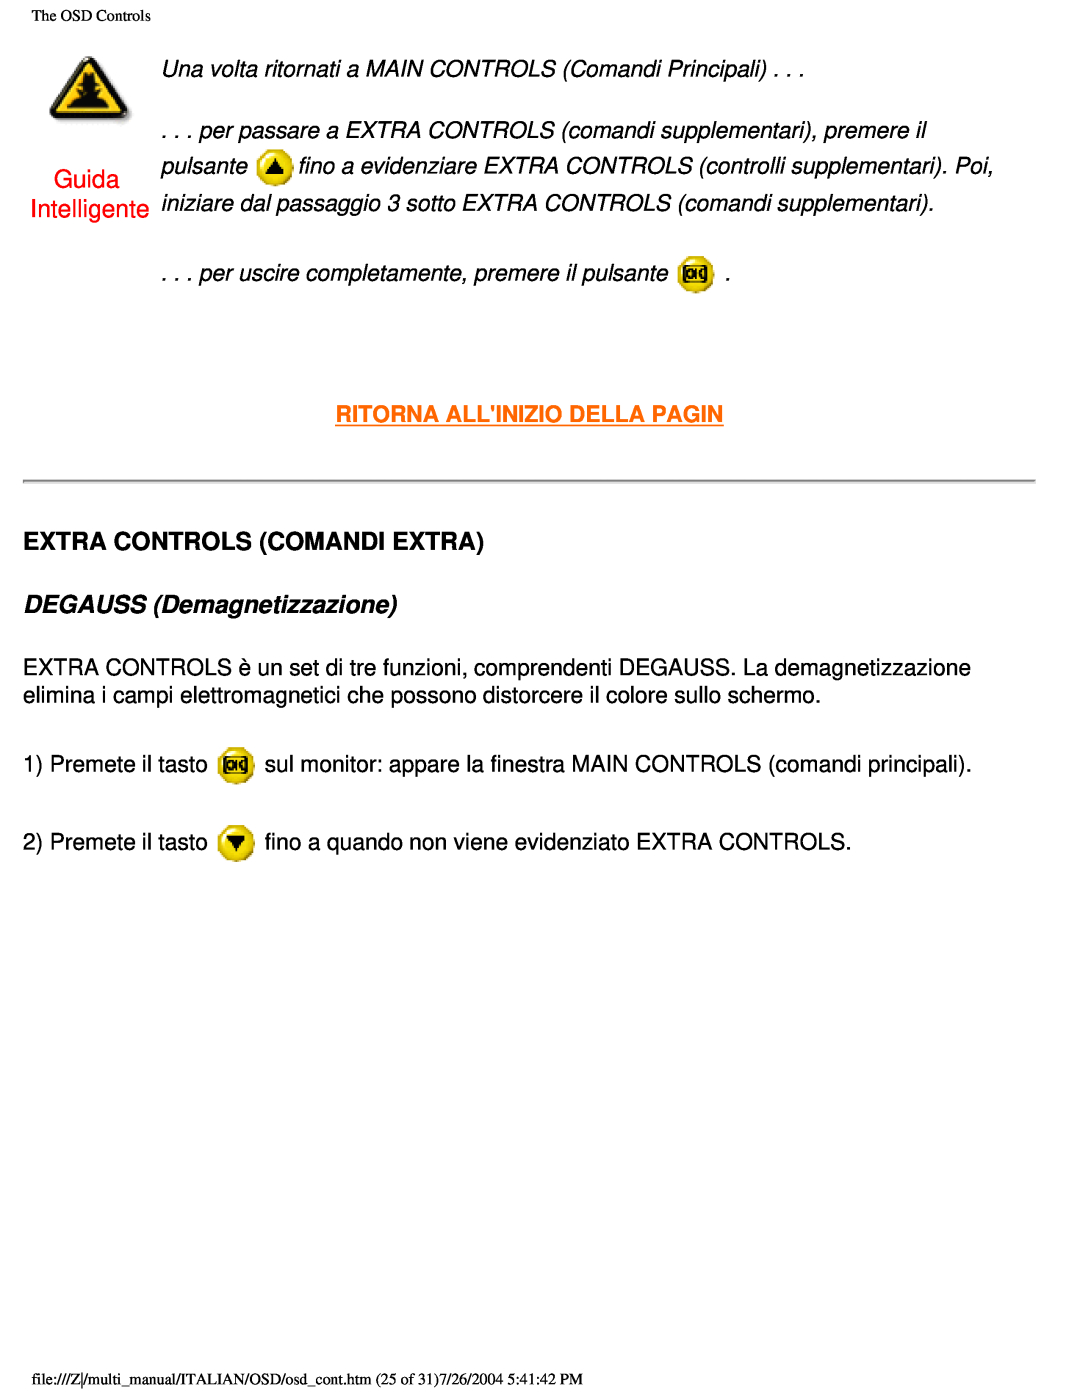 Philips 201B Extra Controls Comandi Extra, DEGAUSS Demagnetizzazione, Guida Intelligente, Ritorna Allinizio Della Pagin 